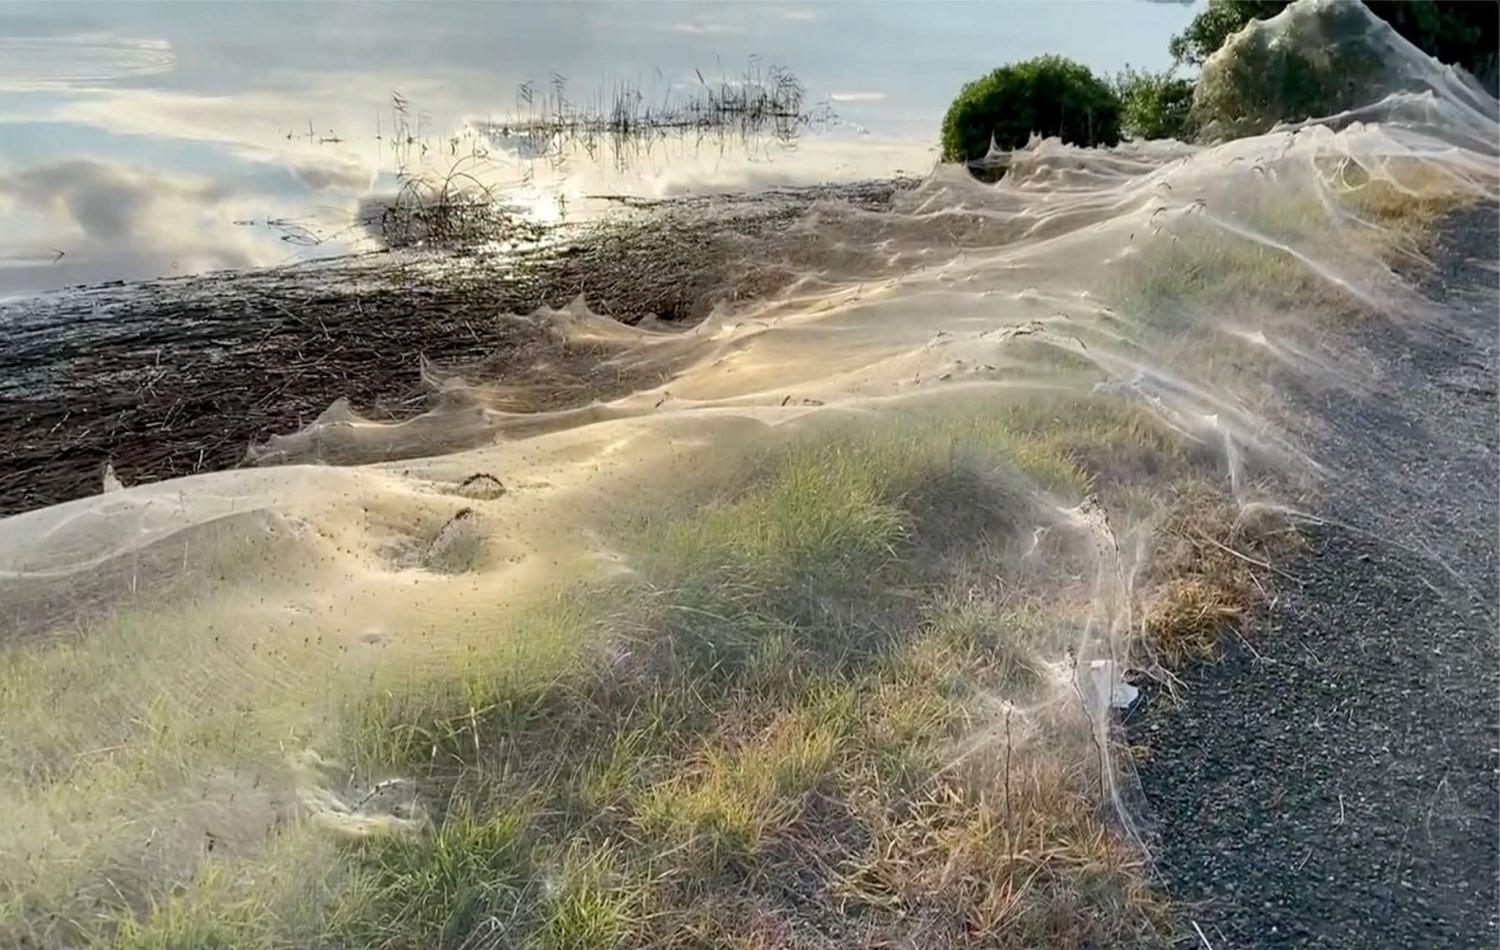 Teias de aranha dominam a paisagem em cidade na Austrália; entenda o fenômeno